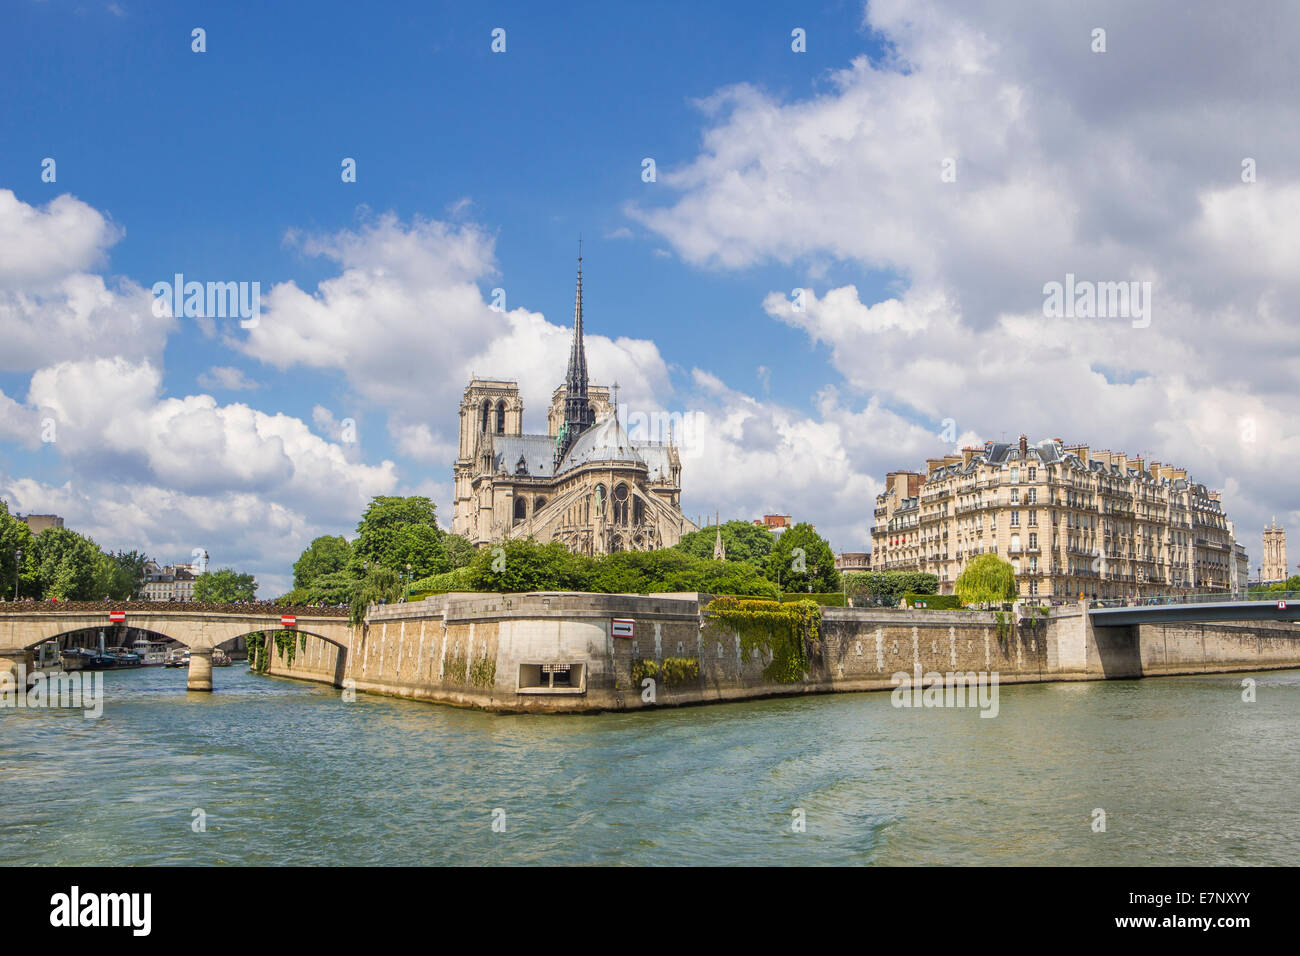 Cathédrale, Ville, France, Notre Dame, Paris, architecture, pont, cite, centre-ville, la Seine, le tourisme, voyages Banque D'Images